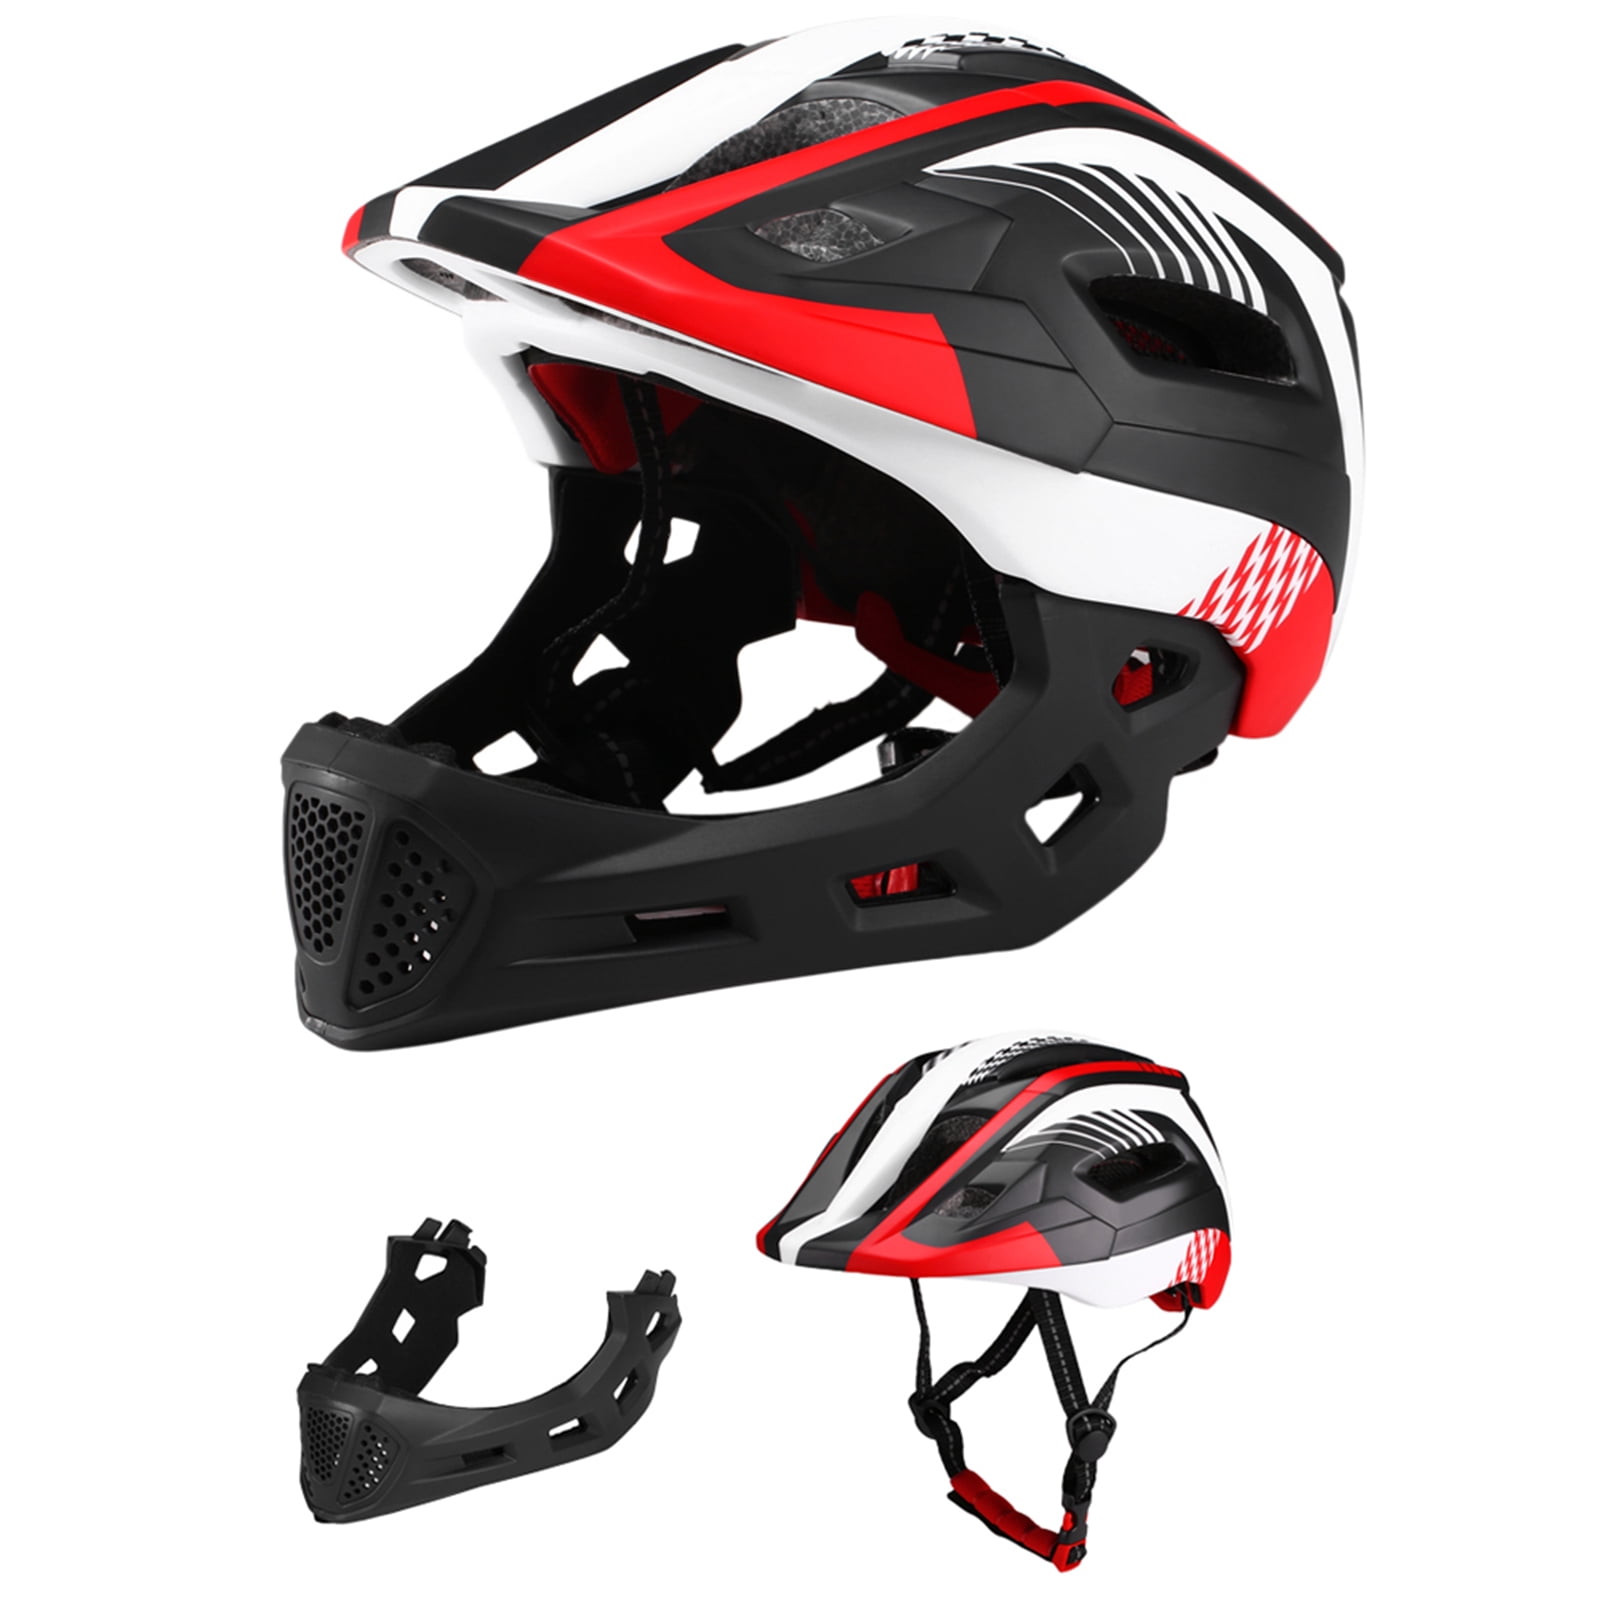 Lixada Kids Bike Helmet Adjustable Detachable Full Face Helmet for